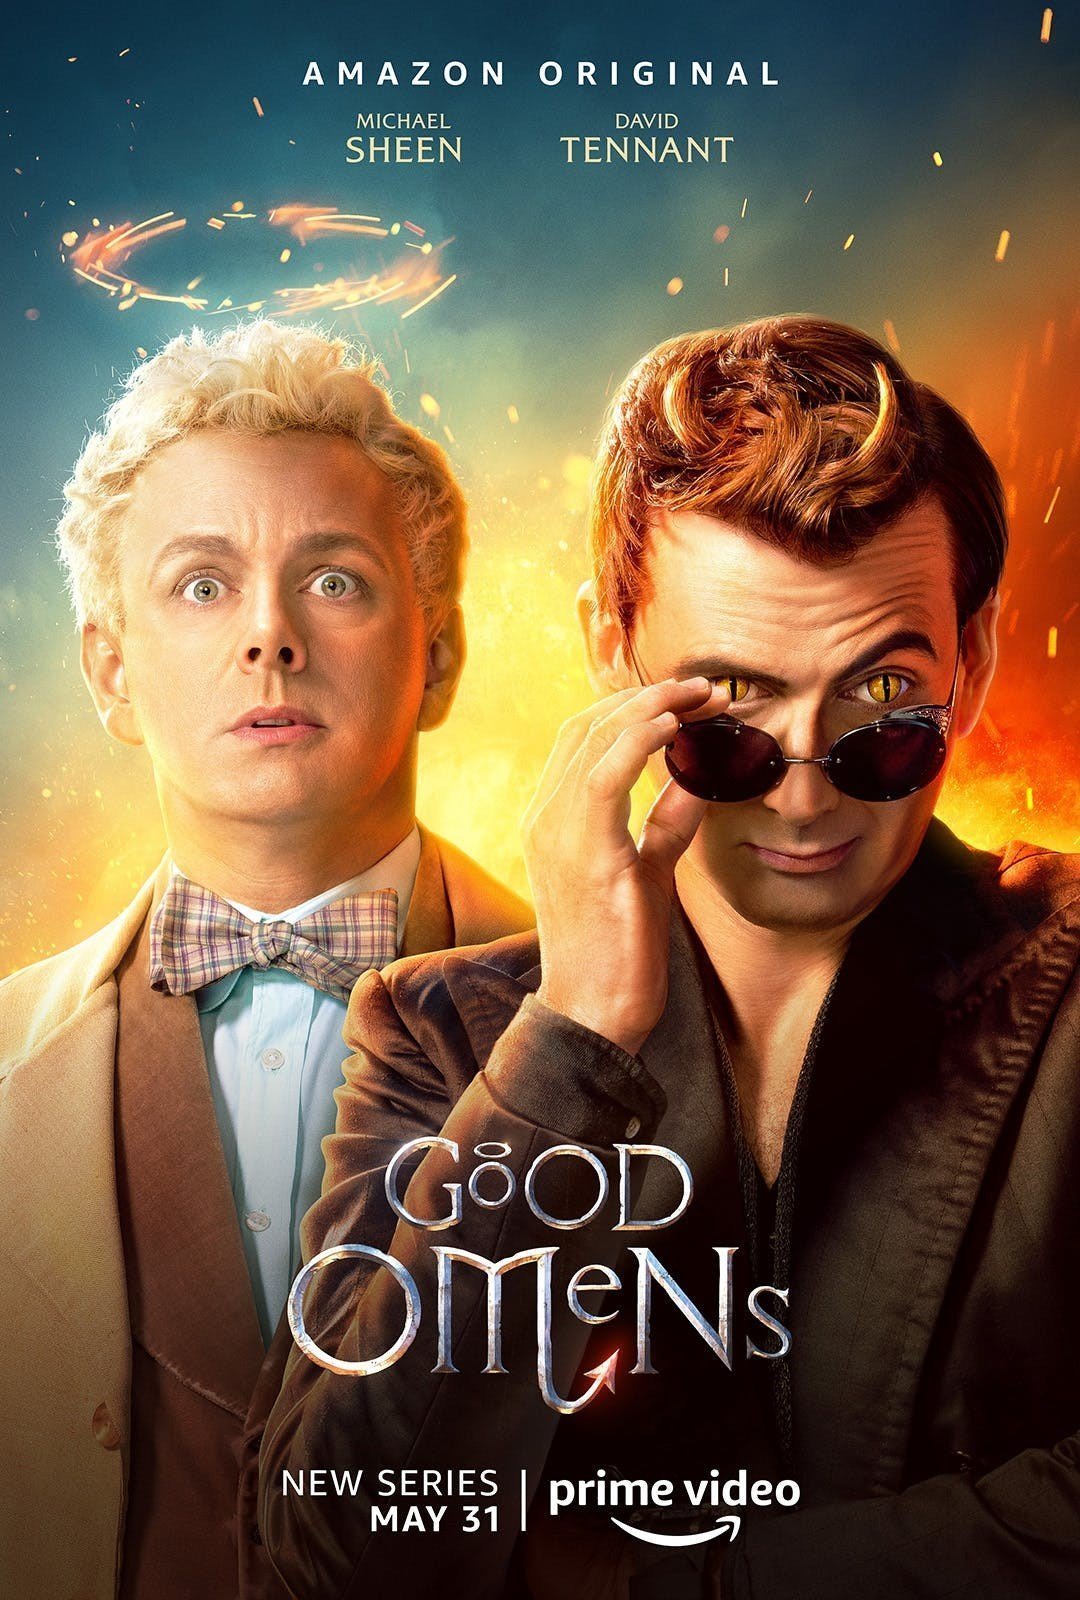 Quatrième poster de la mini-série Good Omens avec Michael Sheen et David Tennant